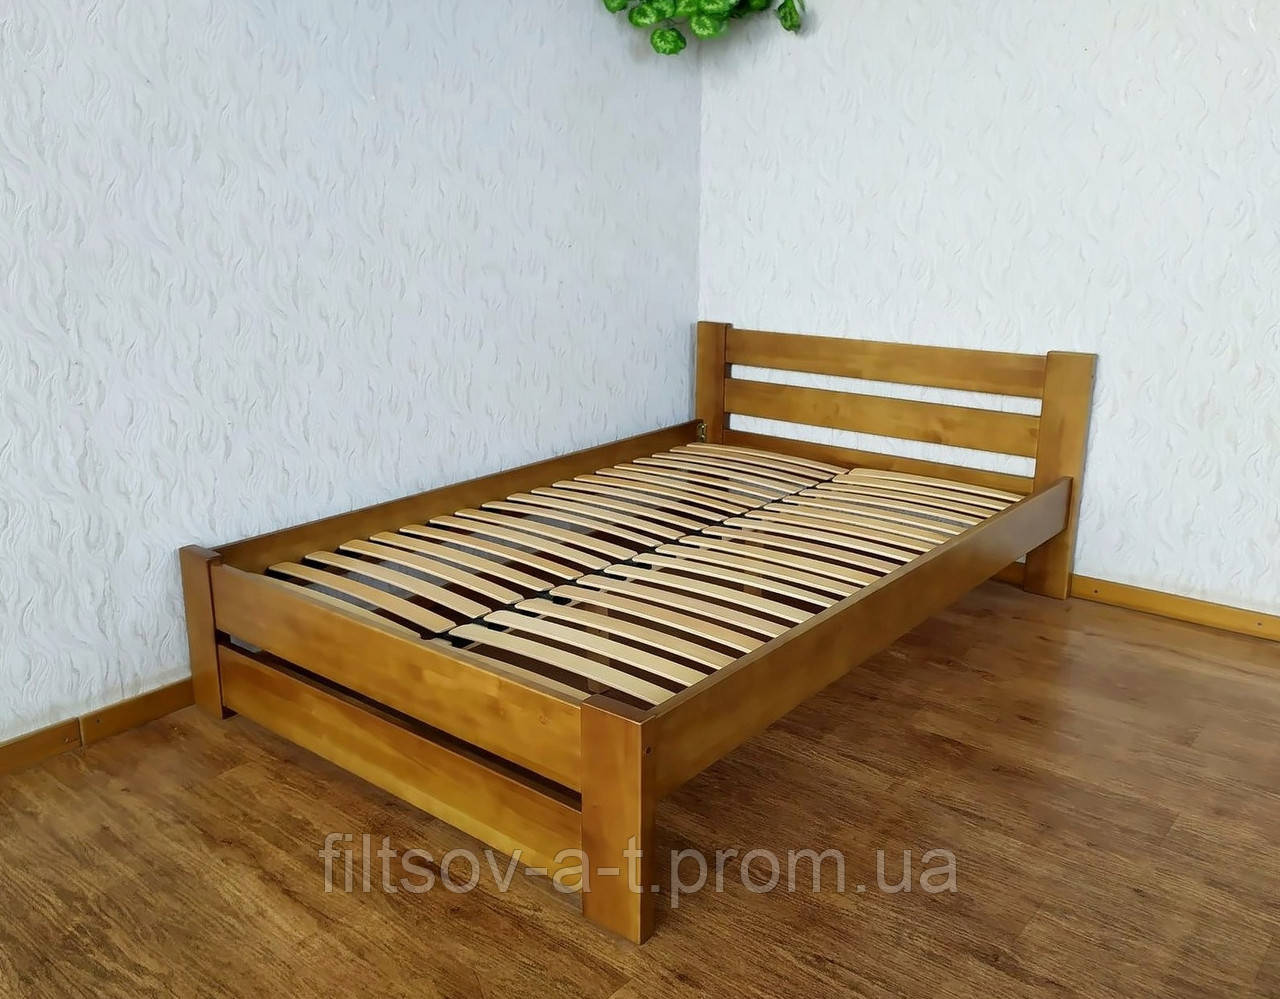 Дерев'яне ліжко двоспальне для спальні з масиву натурального дерева "Лабелія" від виробника